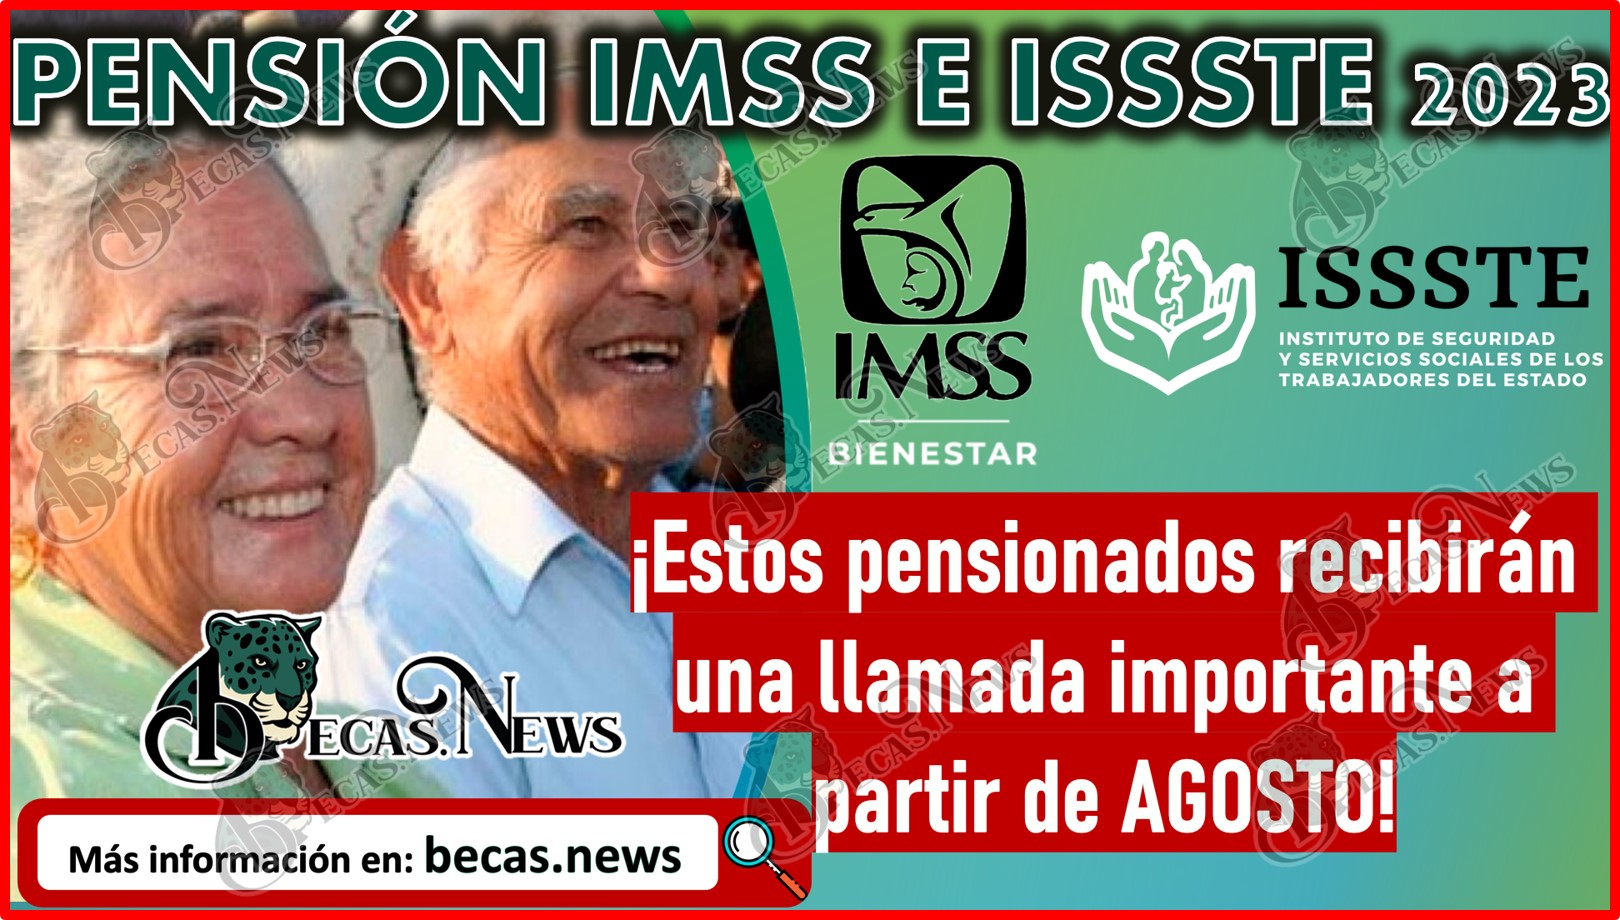 ¡Estos pensionados recibirán una llamada importante a partir de AGOSTO! | Pensión IMSS E ISSSTE 2023